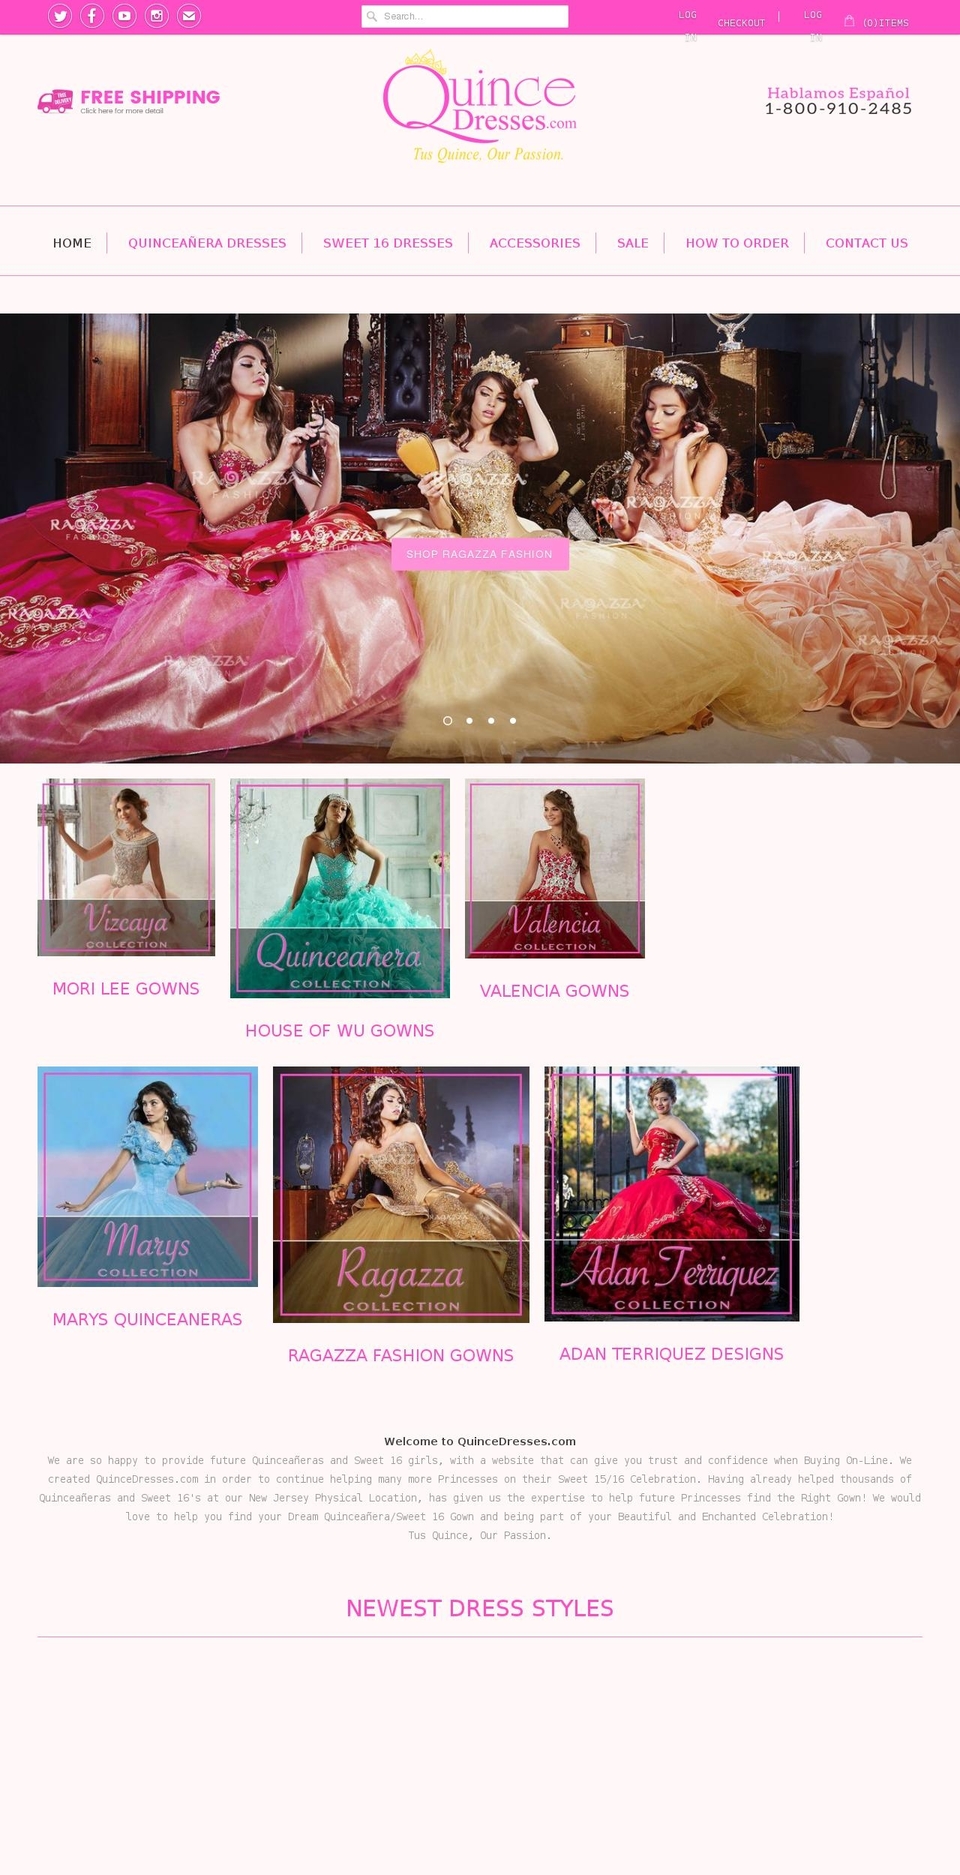 Avenue Shopify theme site example quincedresses.com